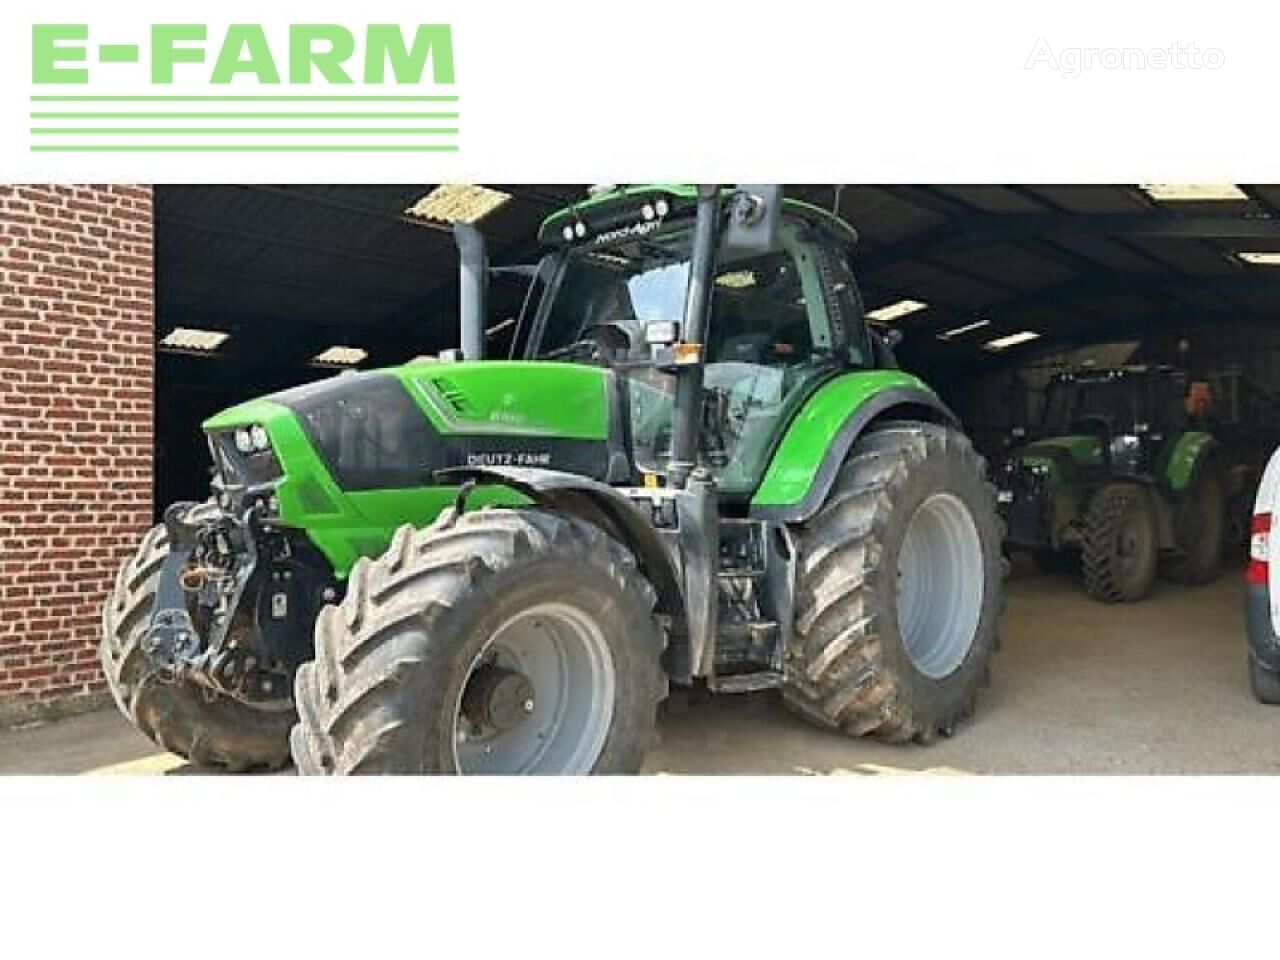 6180 c shift kerekes traktor